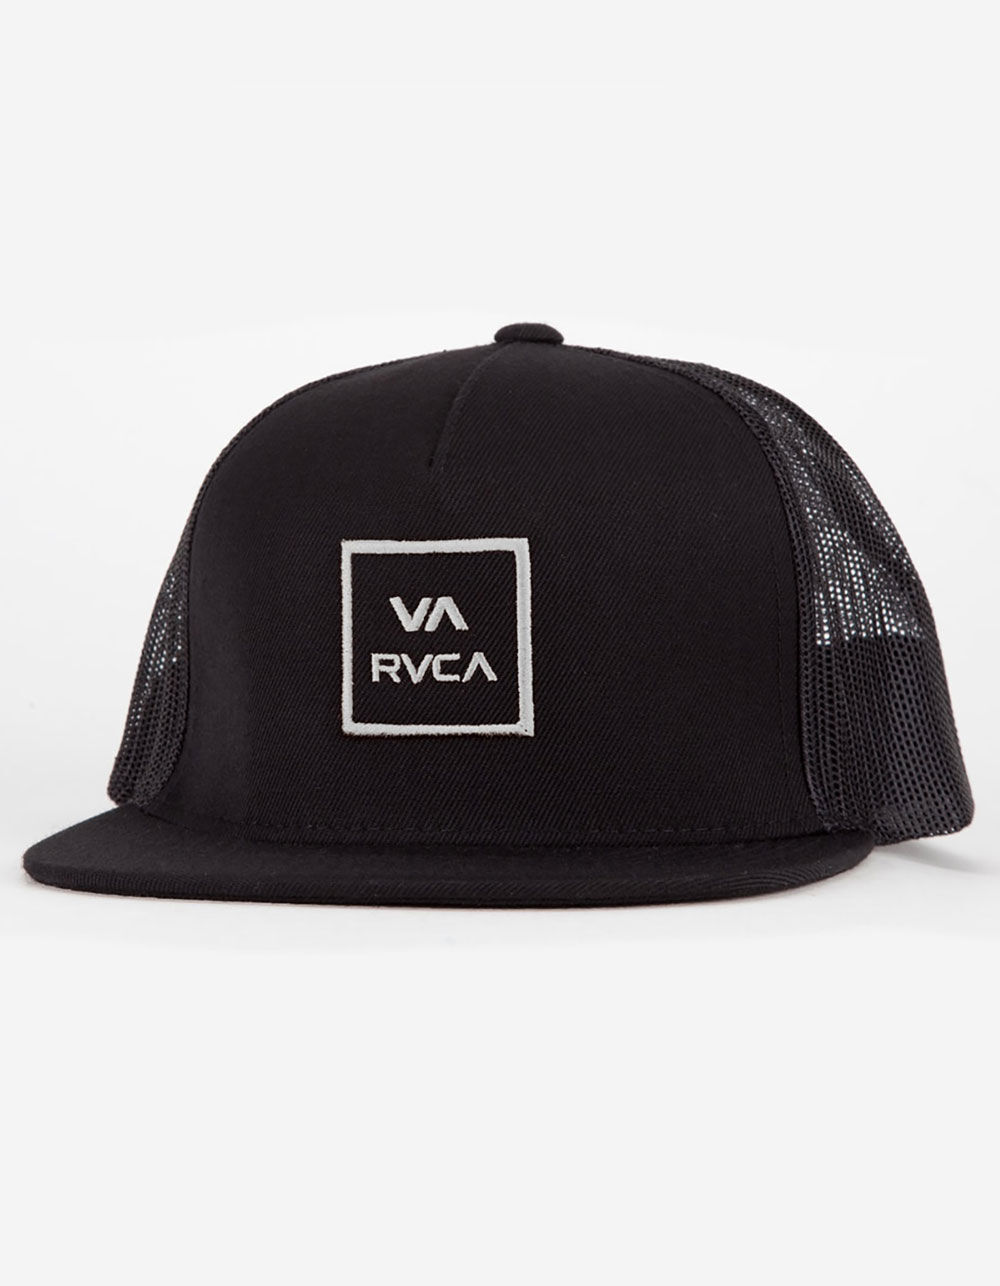 RVCA VA All The Way Trucker (Black) Hat